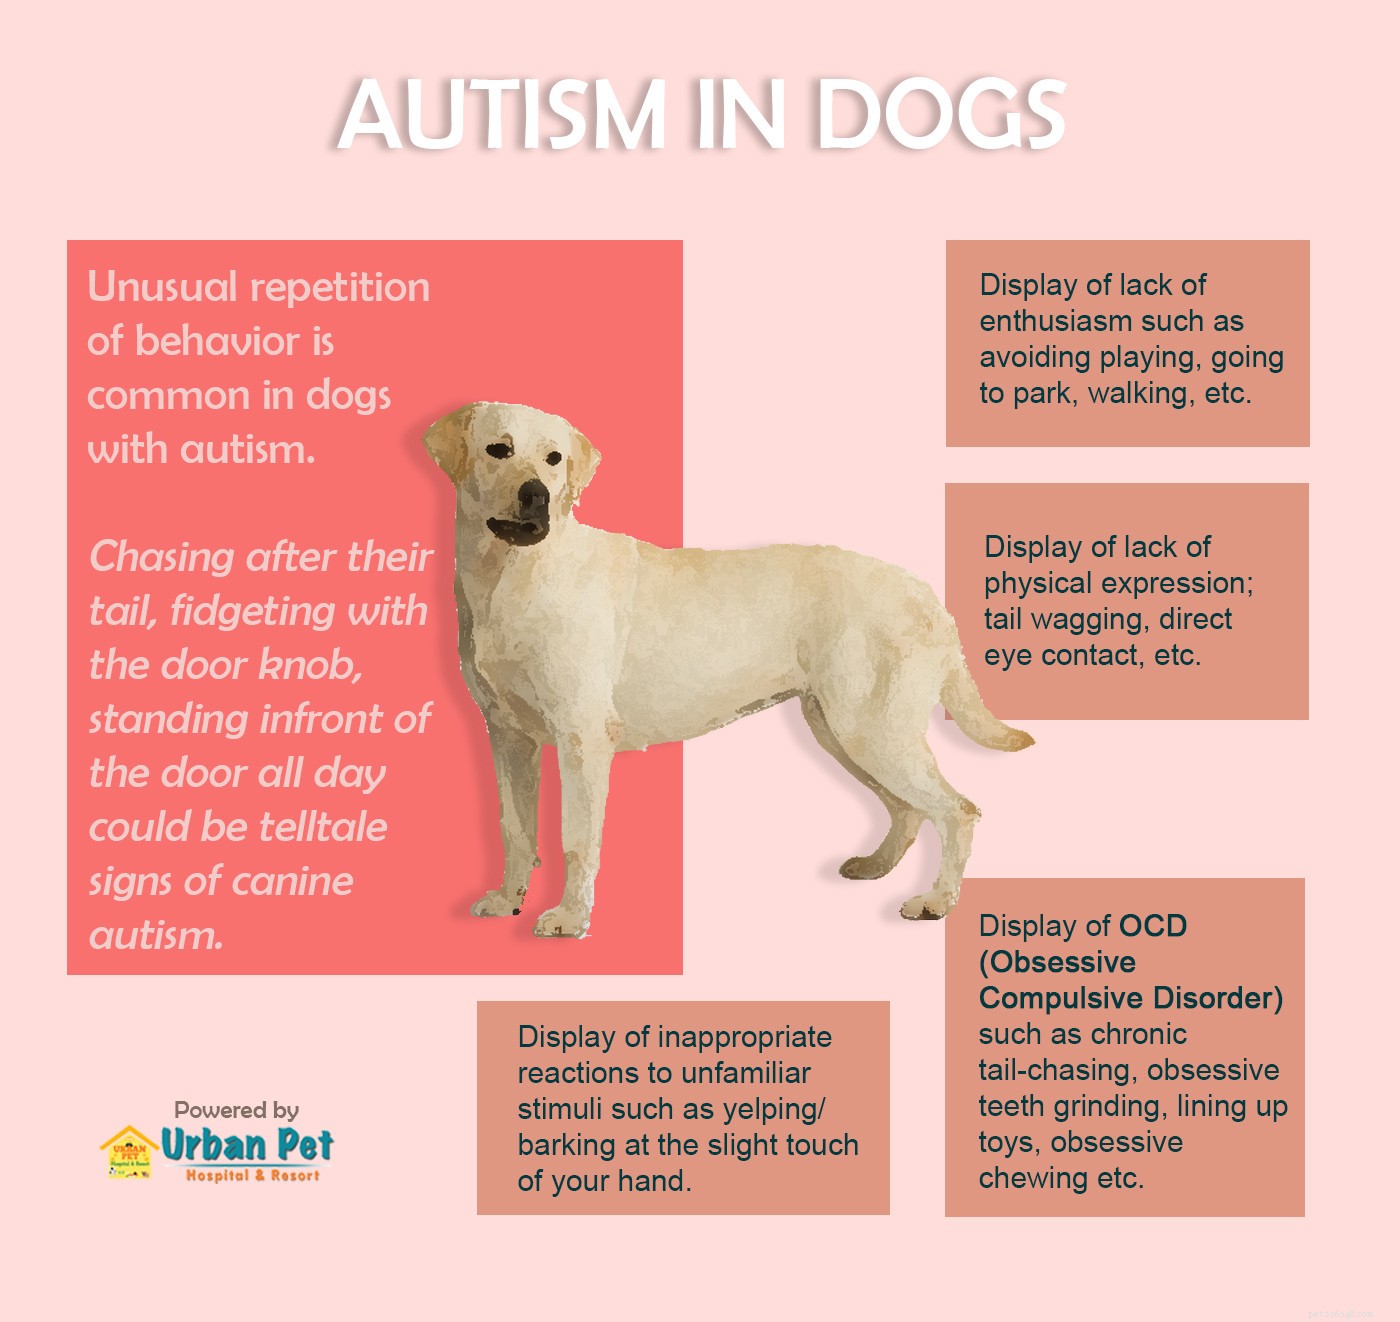 Hur upptäcker man autism hos hundar?